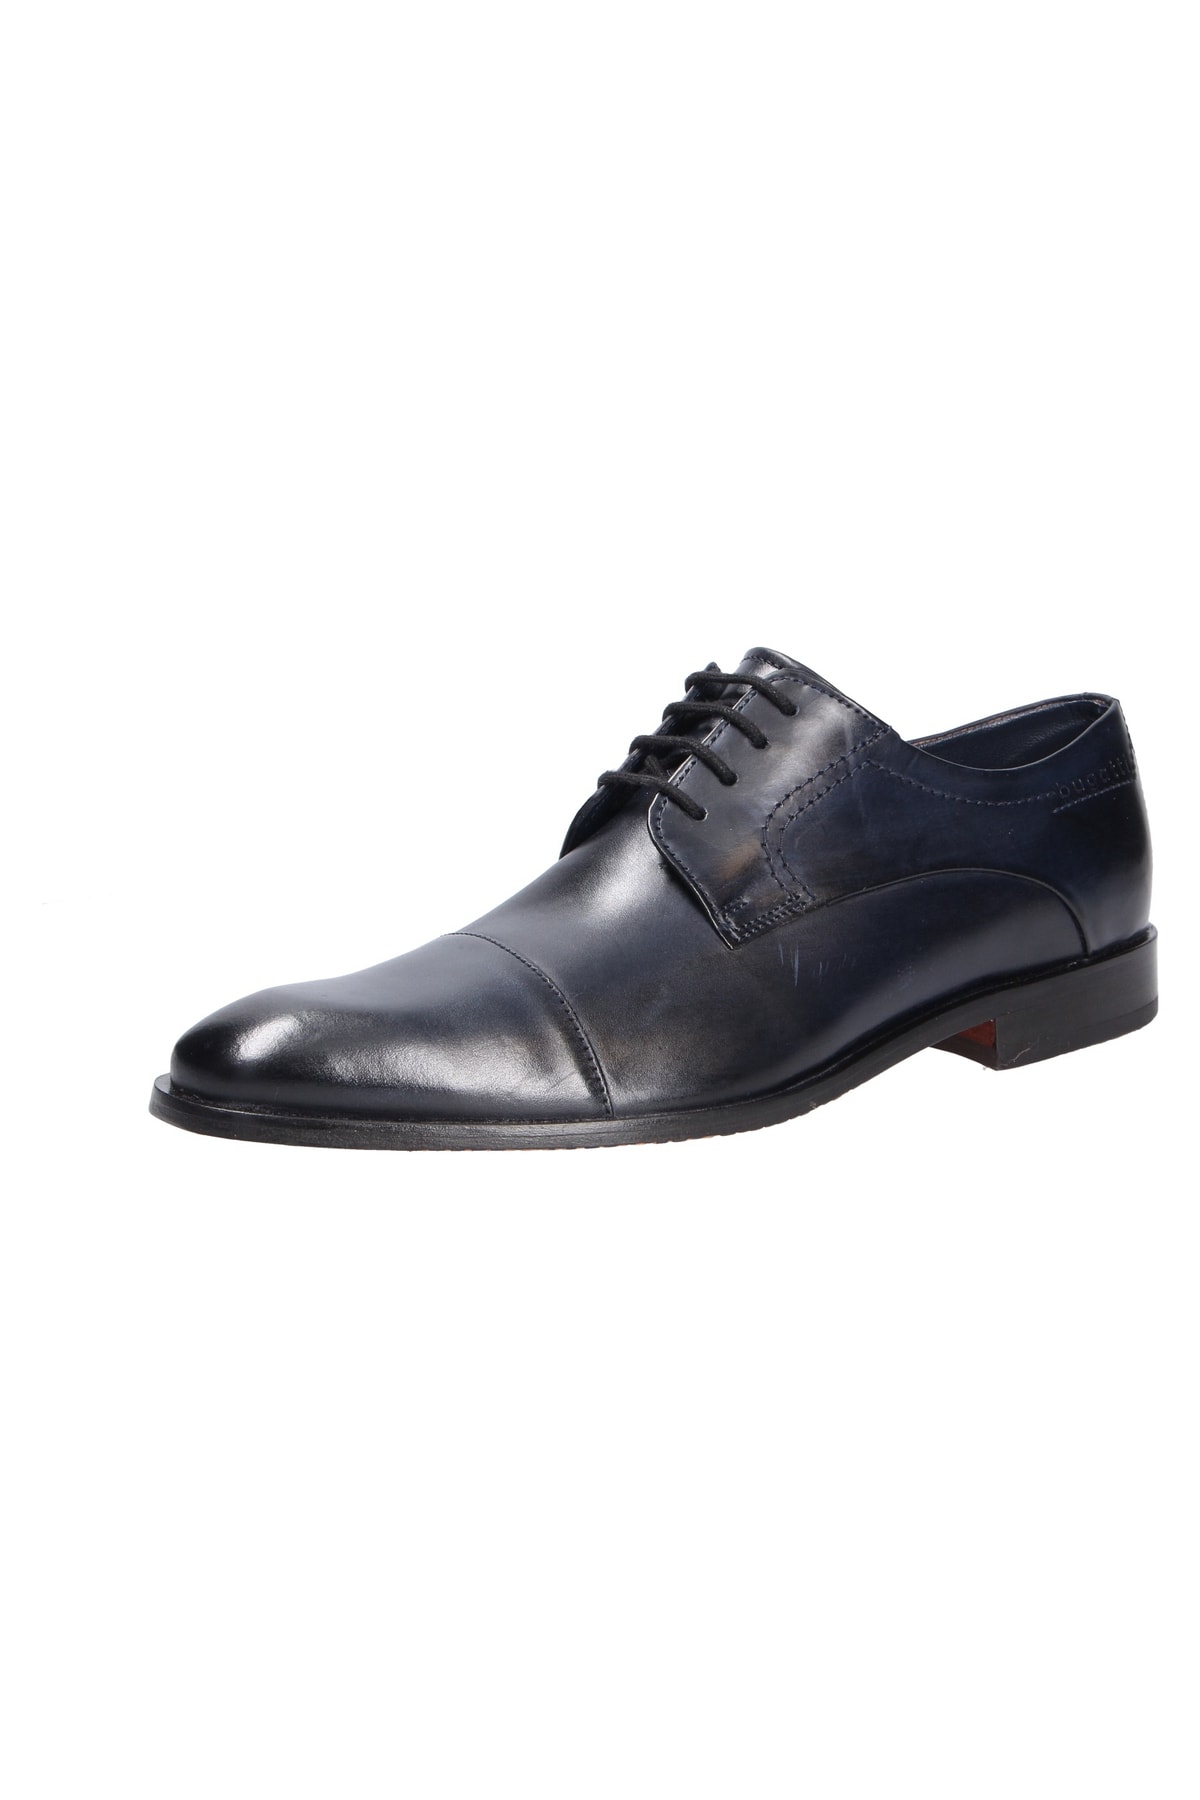 BUGATTI Business-Schuh Blau Flacher Absatz Fast ausverkauft